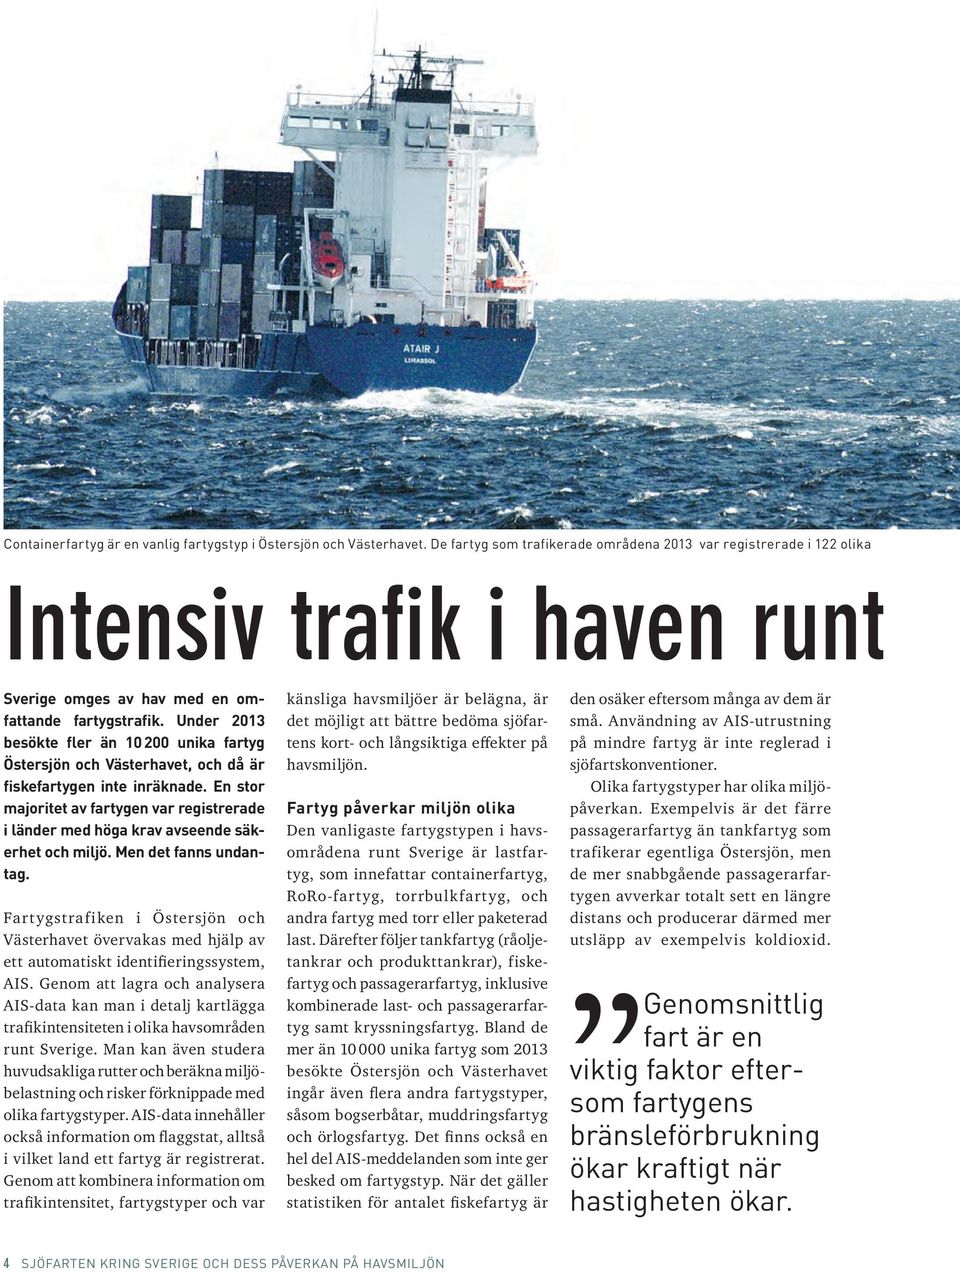 Under 2013 besökte fler än 10 200 unika fartyg Östersjön och Västerhavet, och då är fiskefartygen inte inräknade.